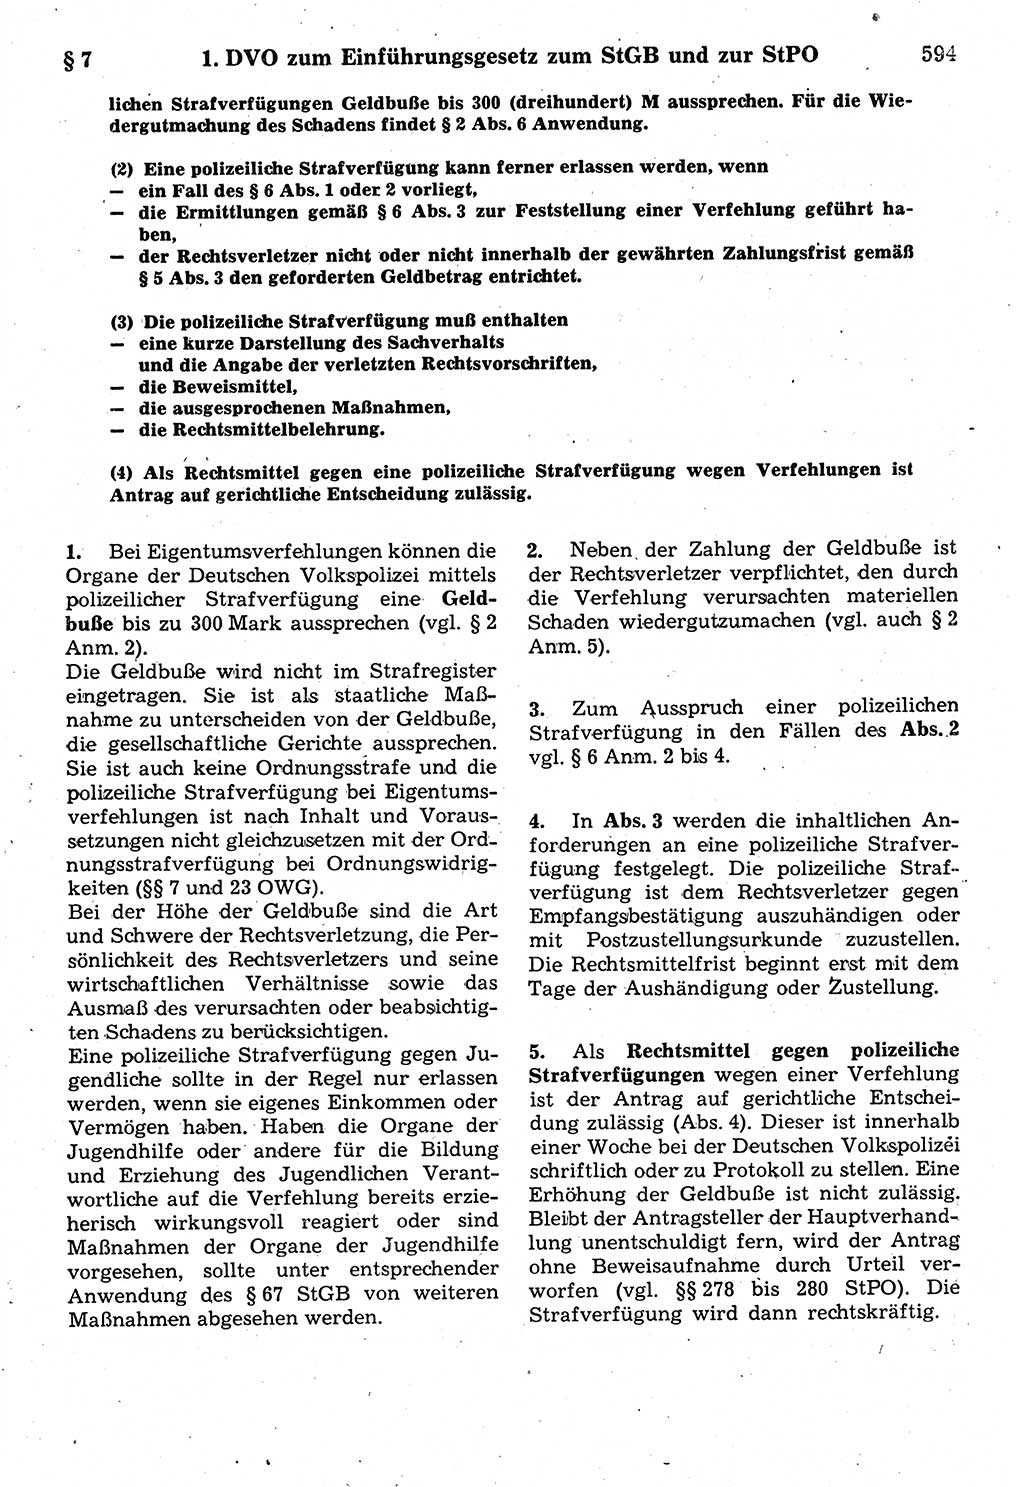 Strafrecht der Deutschen Demokratischen Republik (DDR), Kommentar zum Strafgesetzbuch (StGB) 1987, Seite 594 (Strafr. DDR Komm. StGB 1987, S. 594)